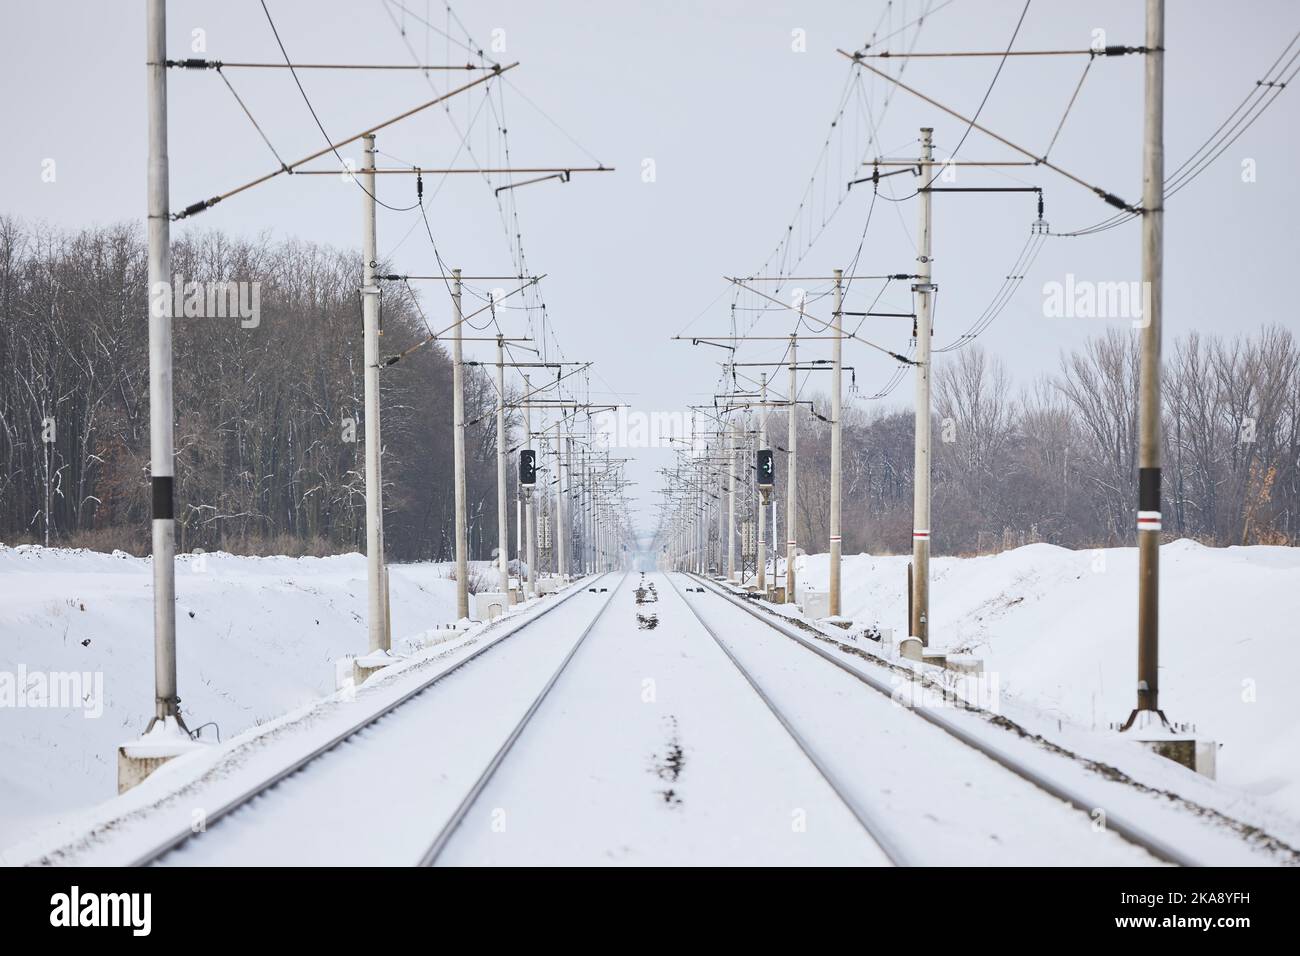 Verschneite Eisenbahn während des frostigen Wintertages. Abnehmende Perspektive von zwei leeren Eisenbahnschienen. Stockfoto